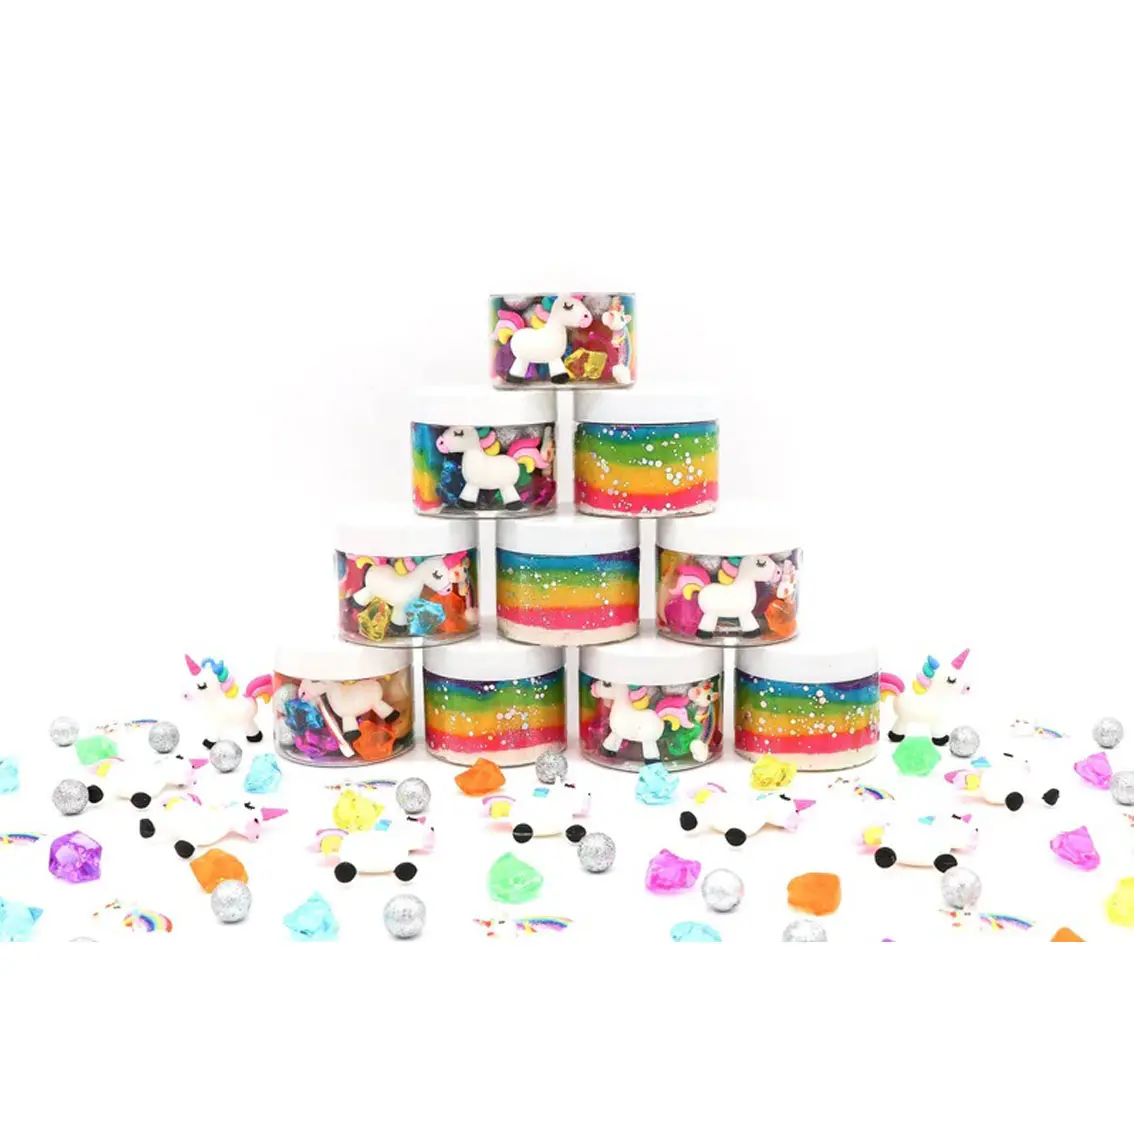 Novo Sensorial Bin Ferramentas para Crianças Rainbow Unicorn Dough Jars Não-tóxico Air Dry Clay Brinquedos Educativos Super Light Clay para Crianças